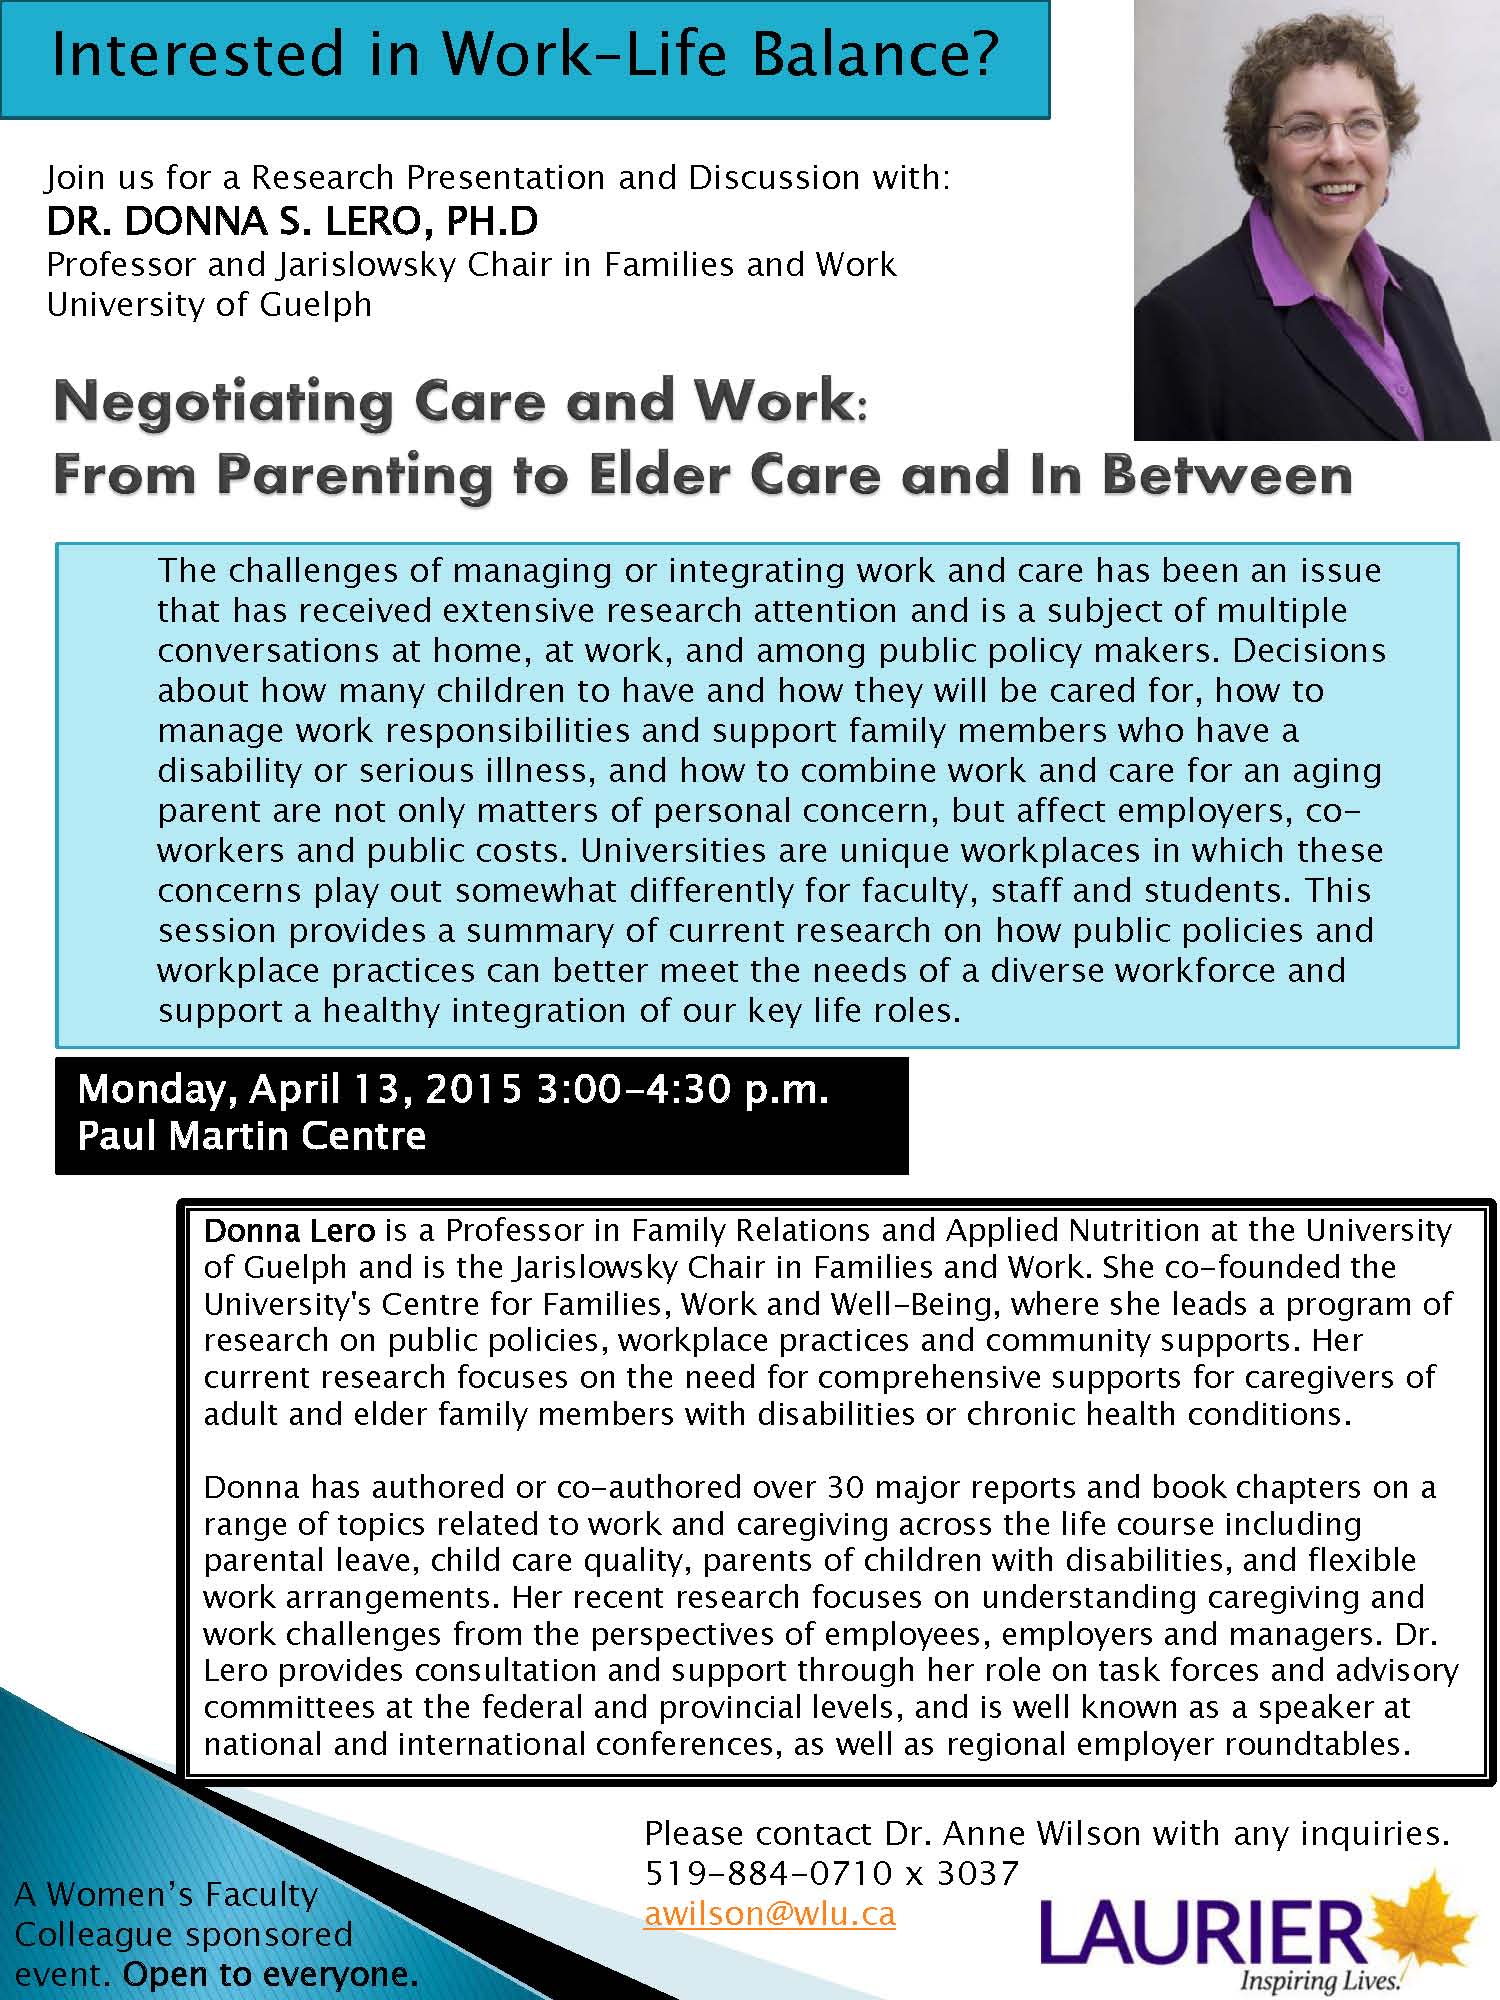 Colloquium Invitation: Dr. Donna Lero Discusses Work Life Balance– April 13, 3 pm